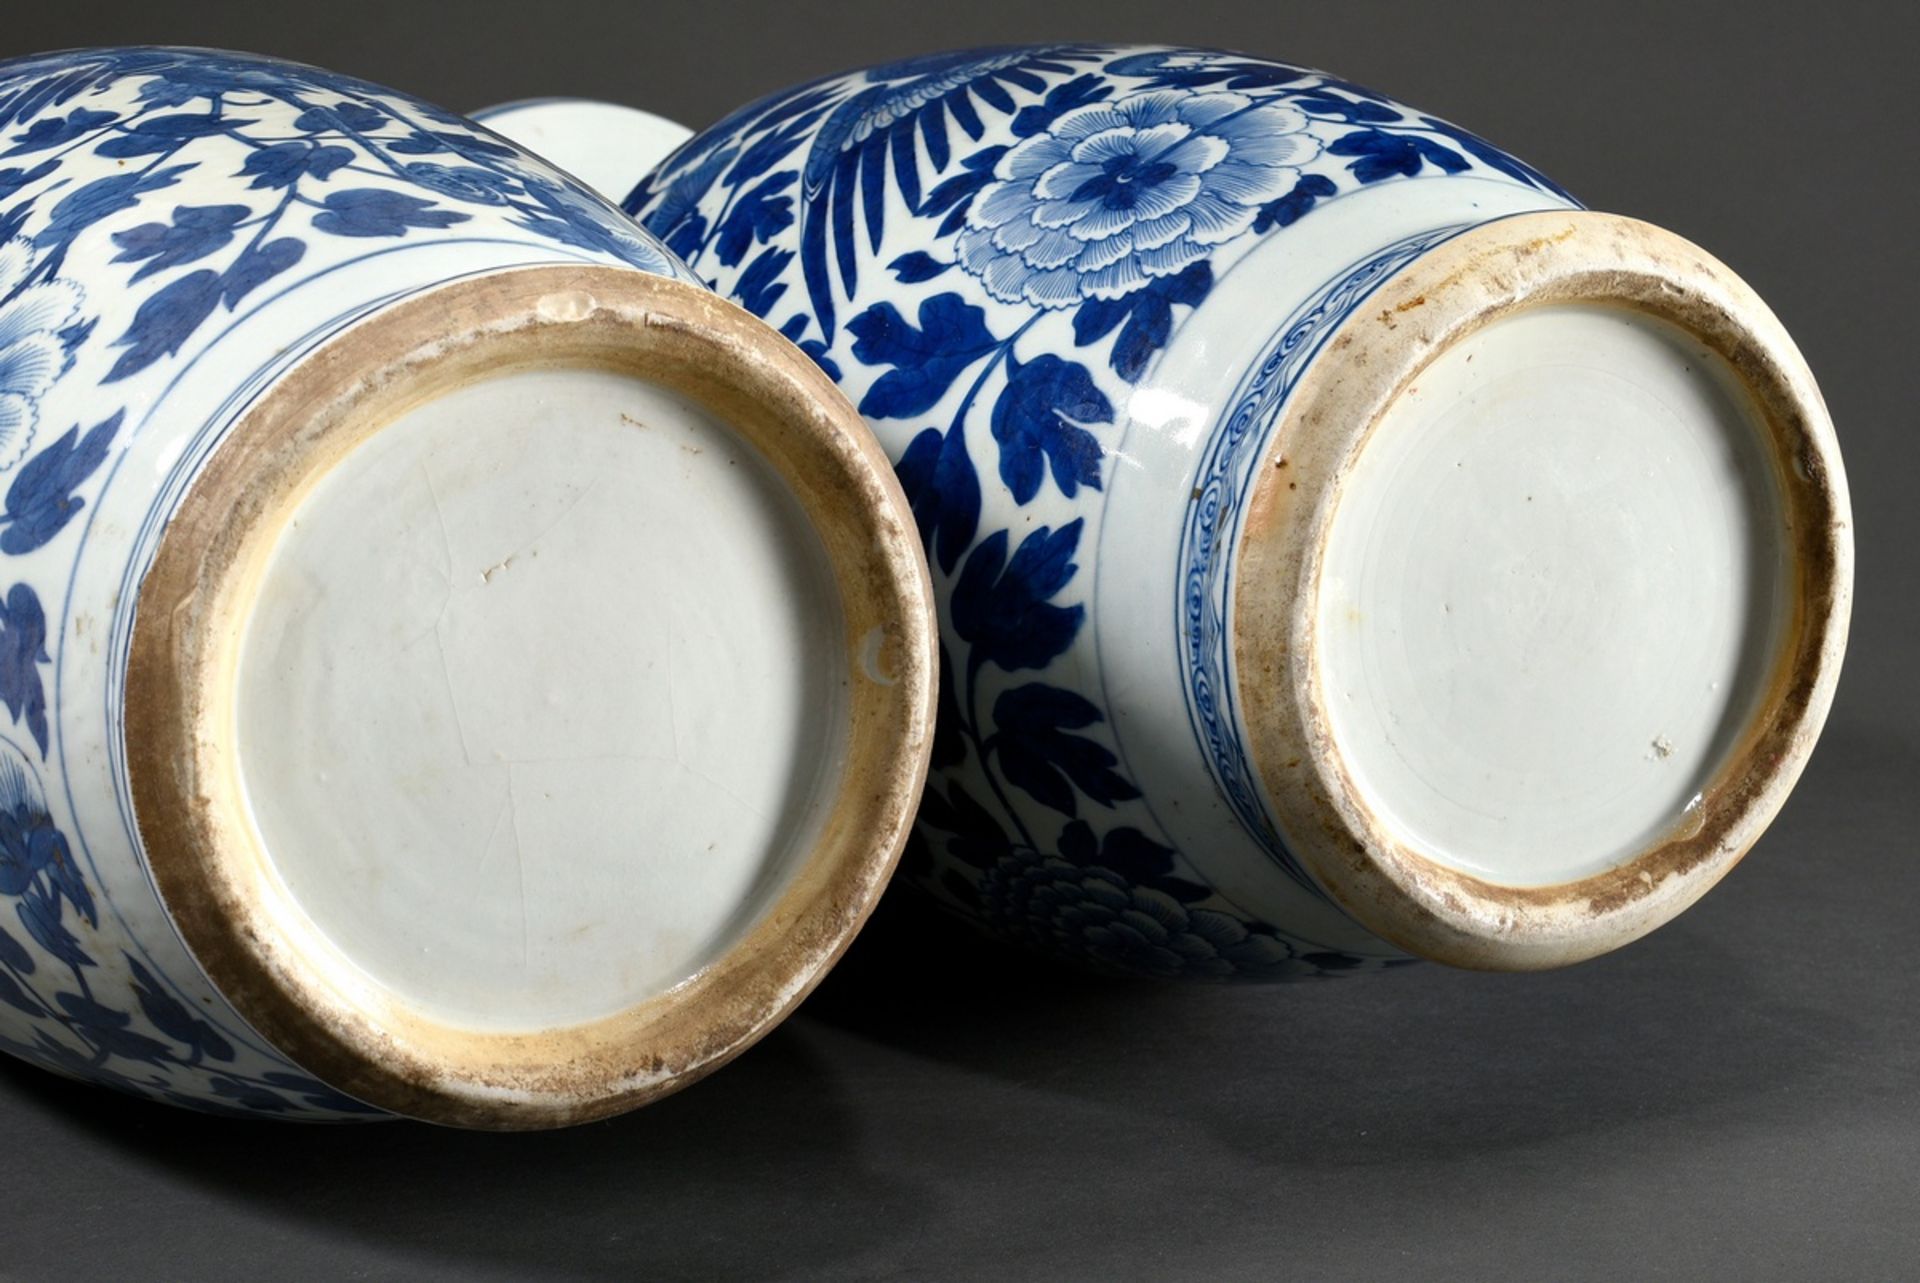 2 Diverse hohe Porzellan Rouleau Vasen mit seitlichen Henkeln in Drachenform und reichem Blaumalere - Bild 9 aus 9